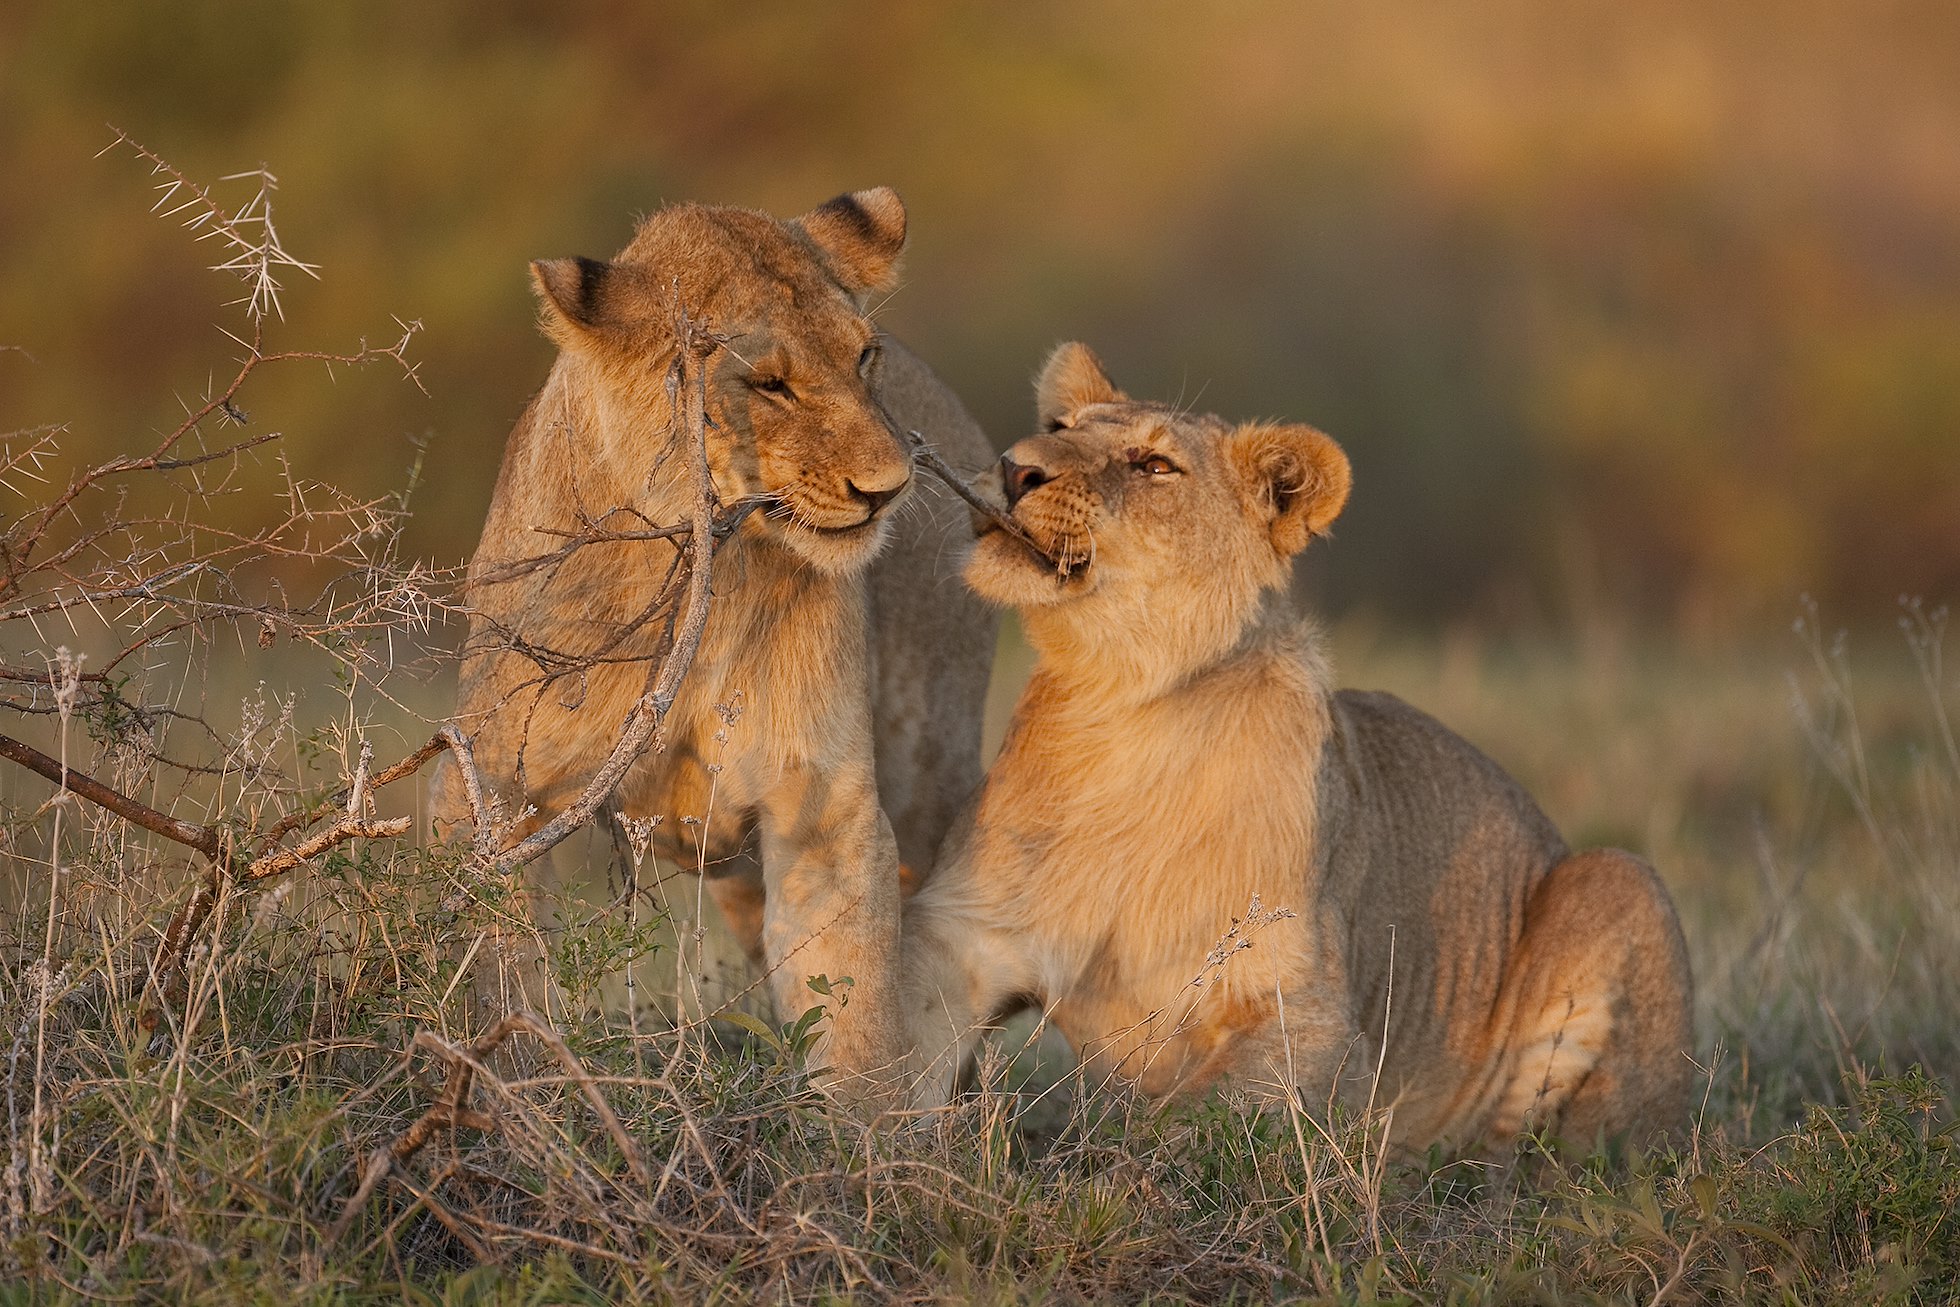 Young lions (Pathera leo) playing, Serengeti National Park, Tanzania.